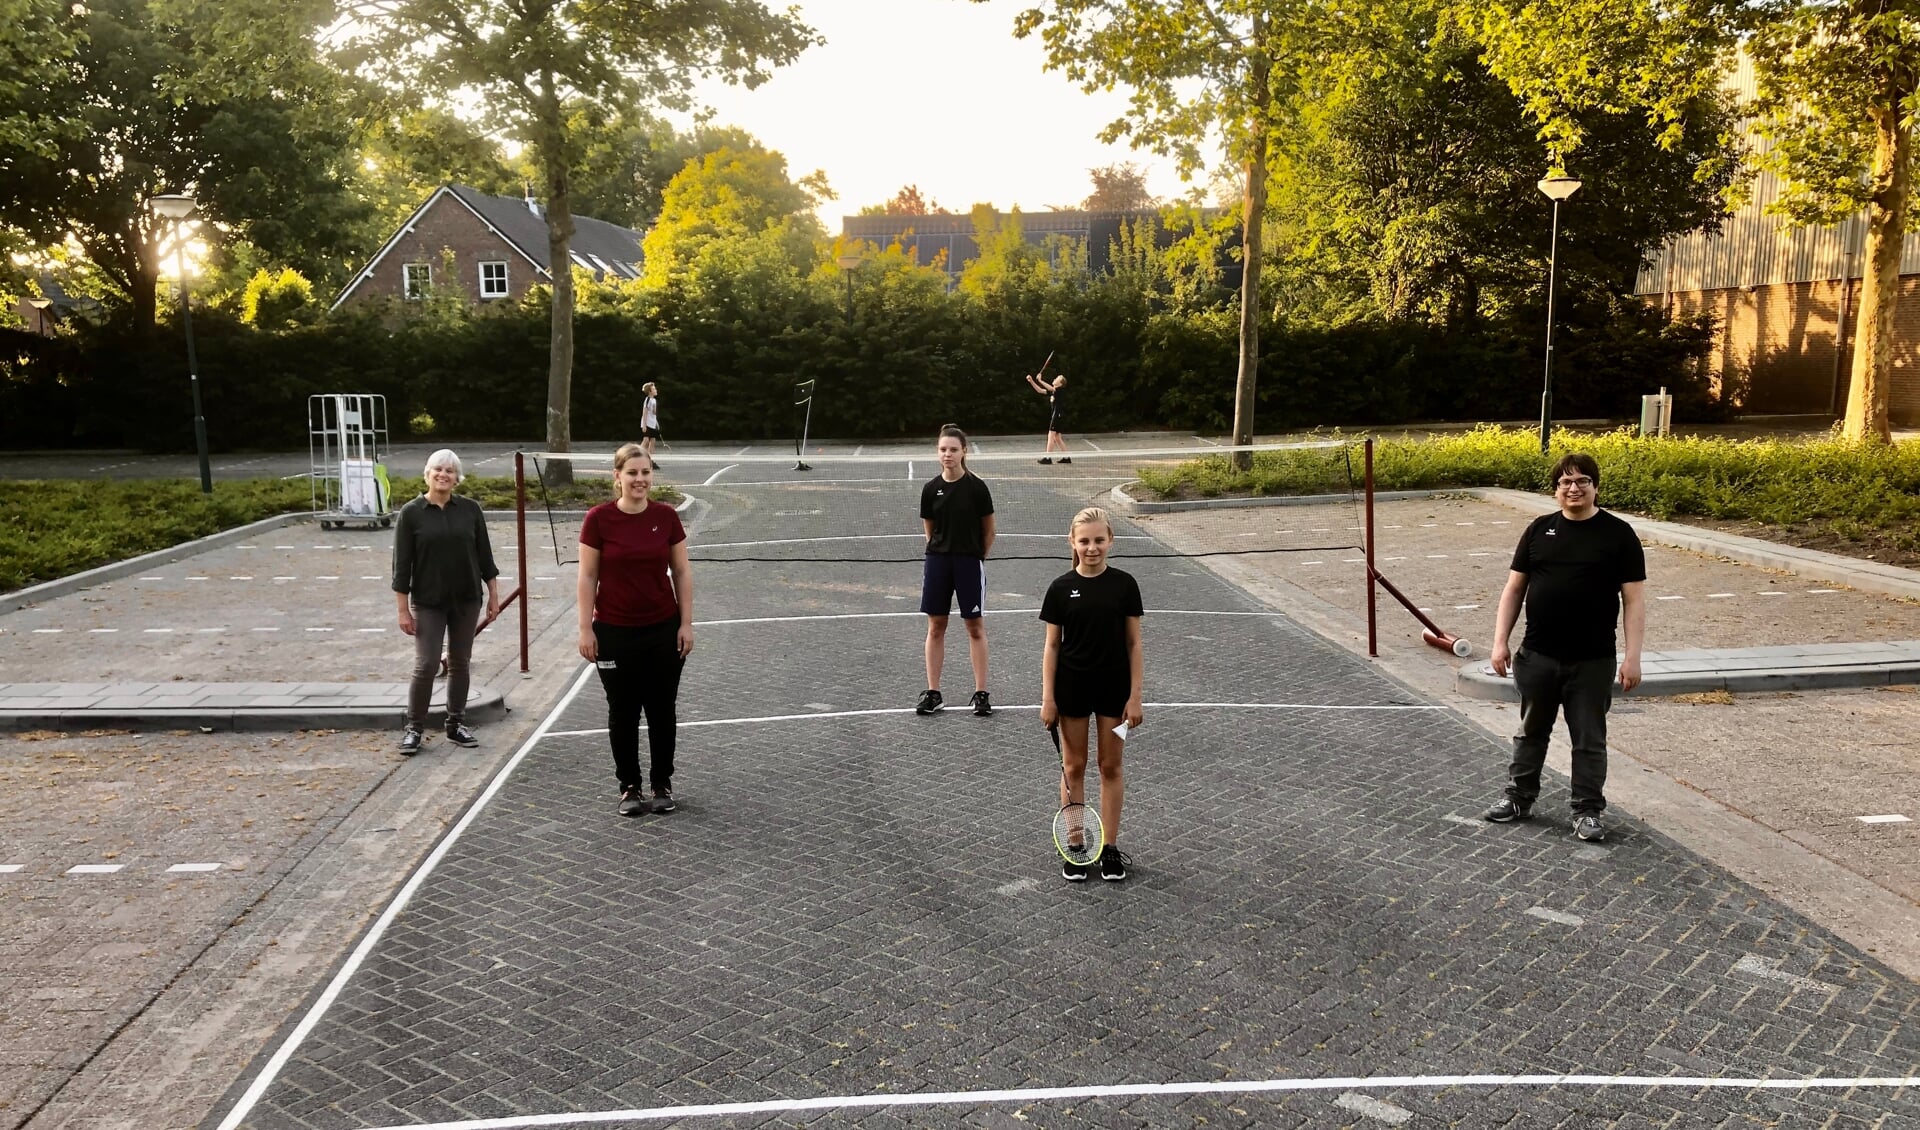 Badminton Club Lieshout gaat (her)opstarten: voorlopig alleen met buiten-badminton voor de jeugd. 